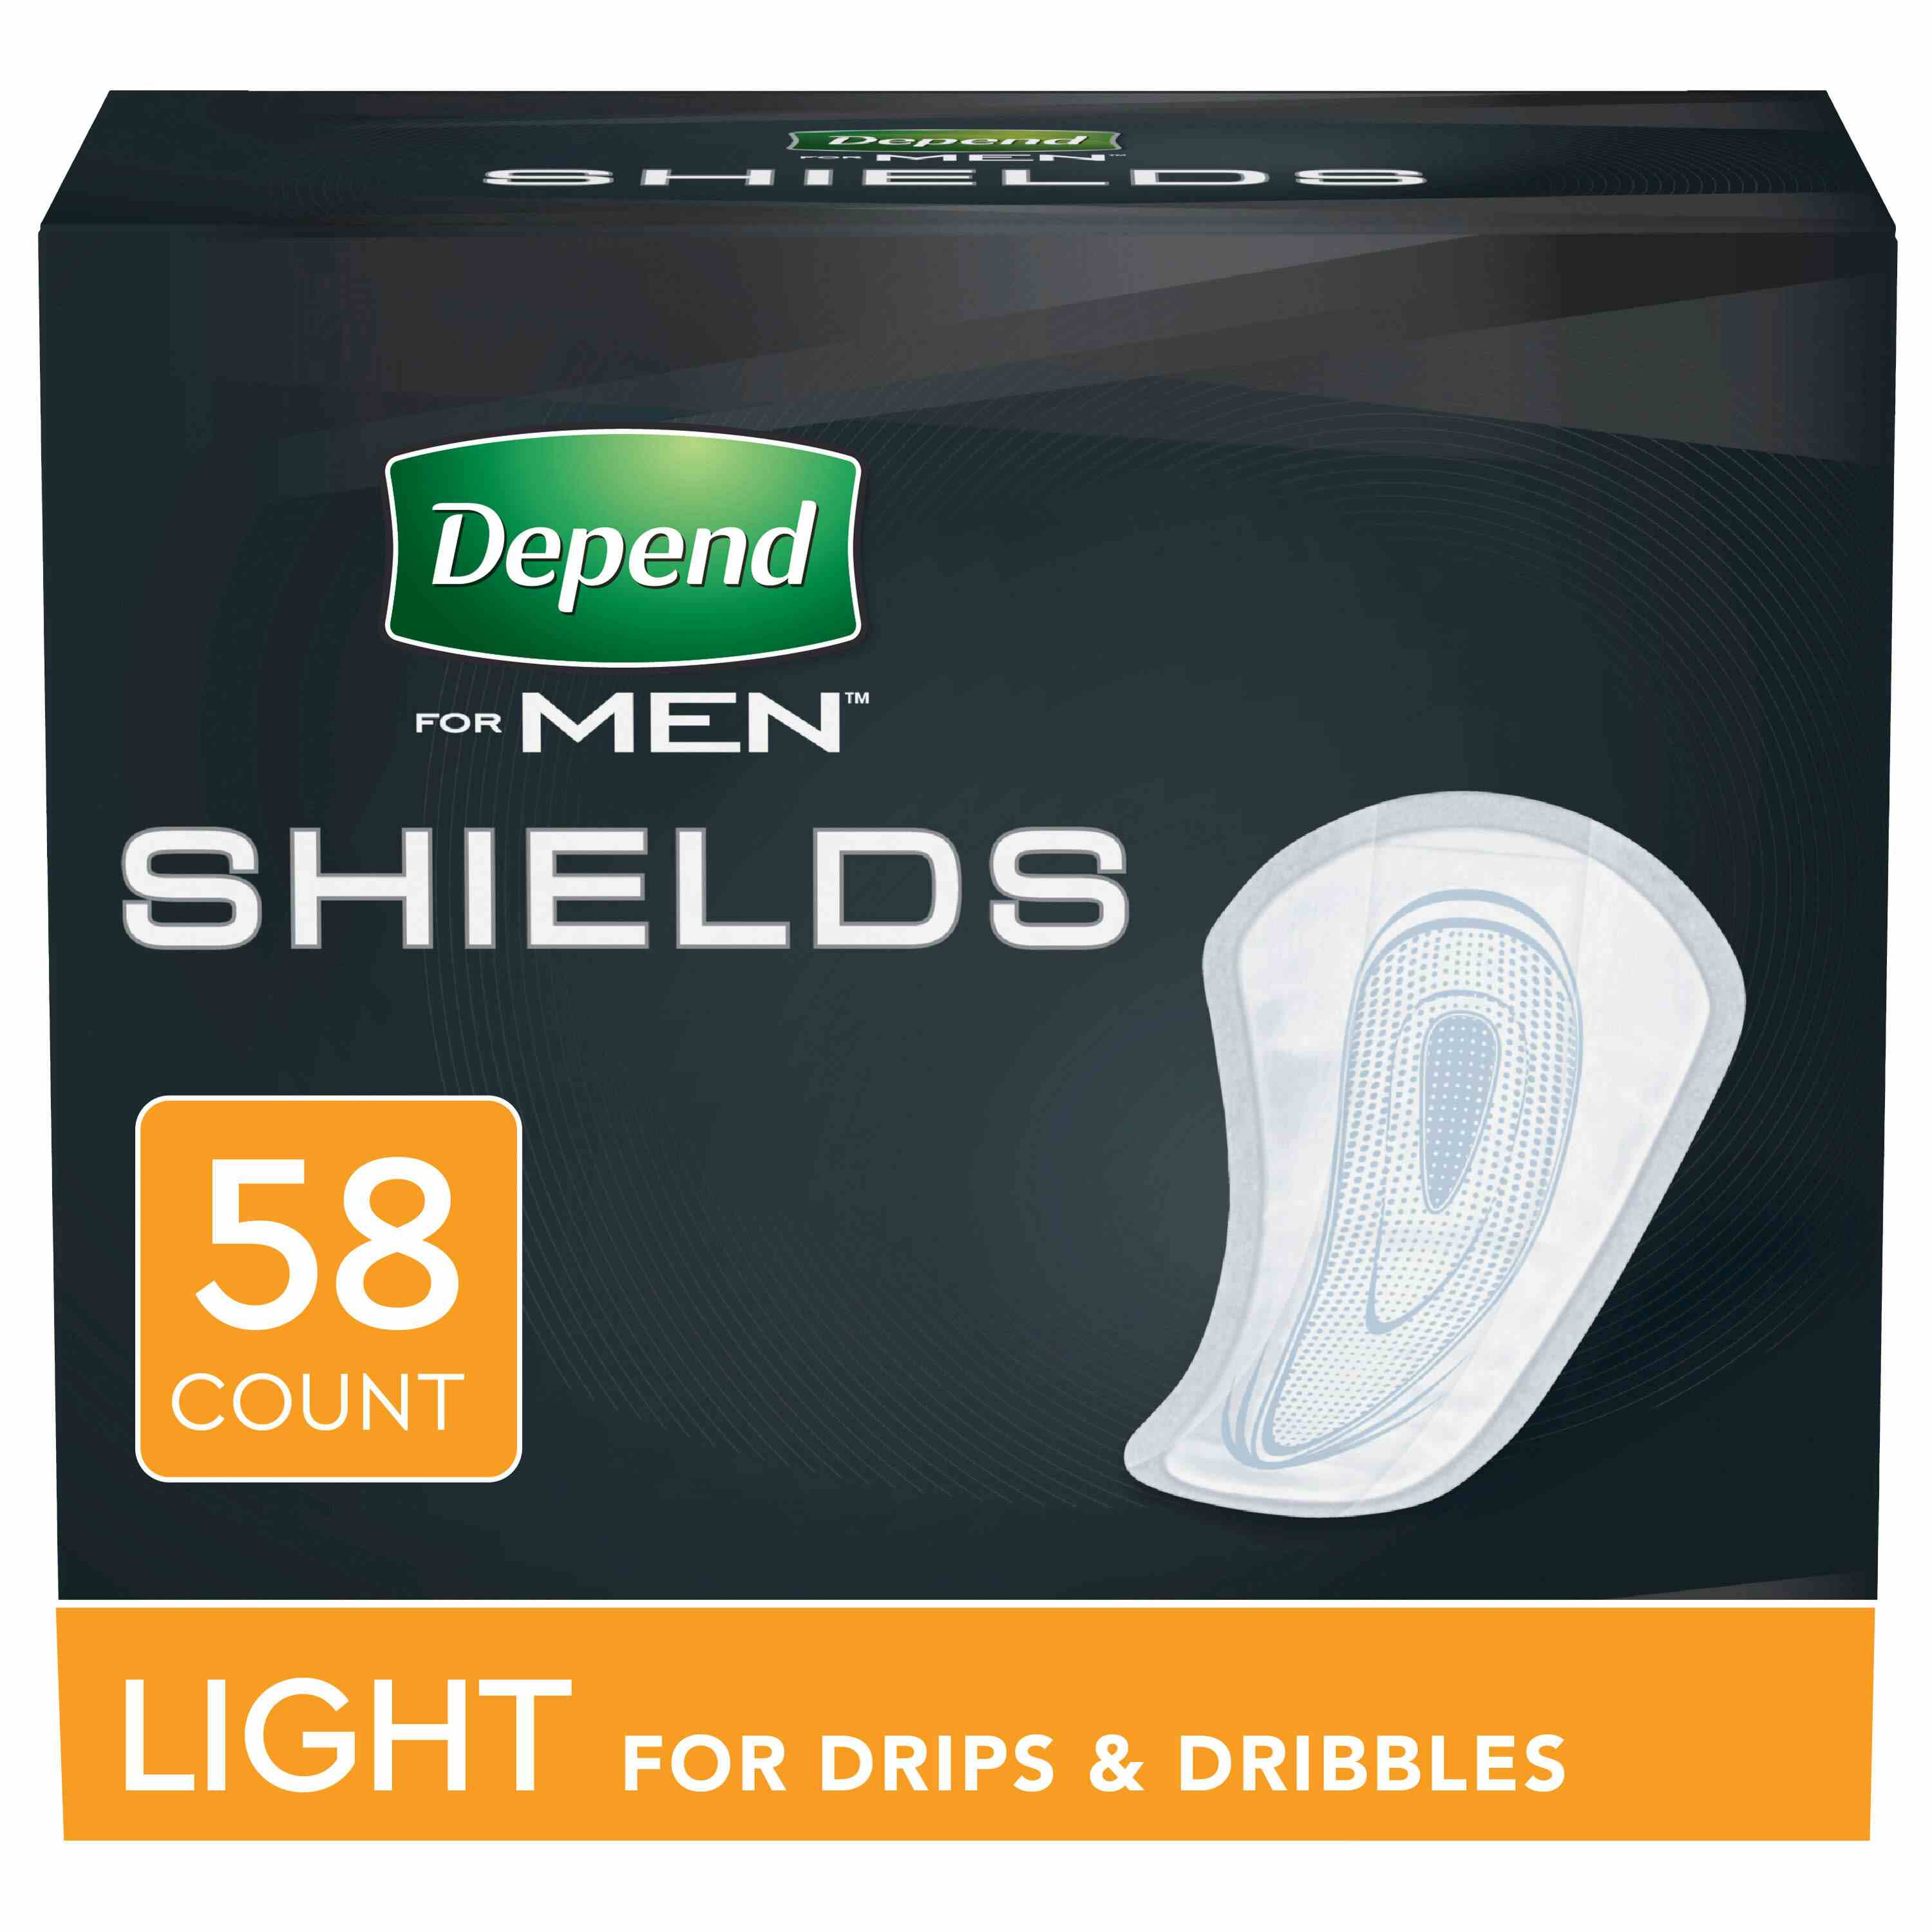 Depend Shields for Men, Light